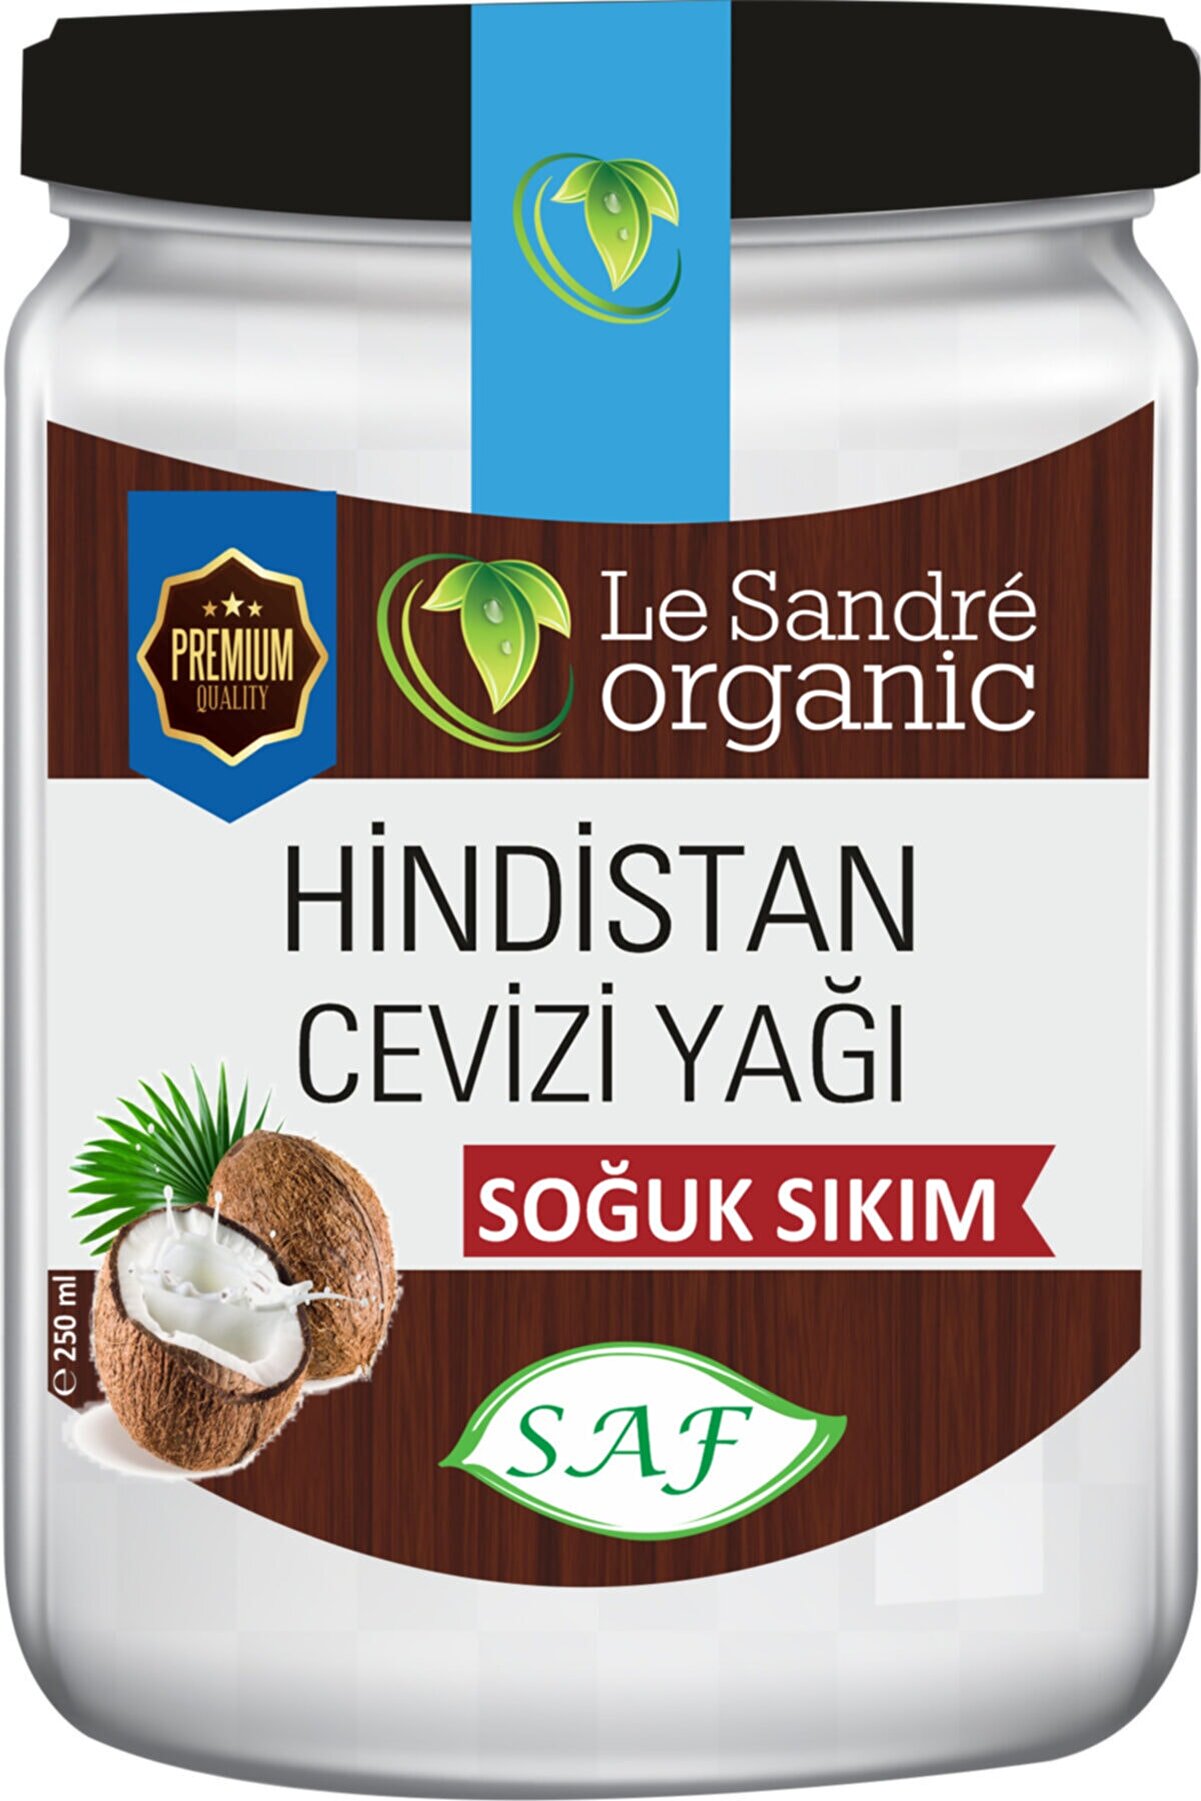 Le'Sandre Organics Soğuk Sıkım Hindistan Cevizi Yağı 250 Ml